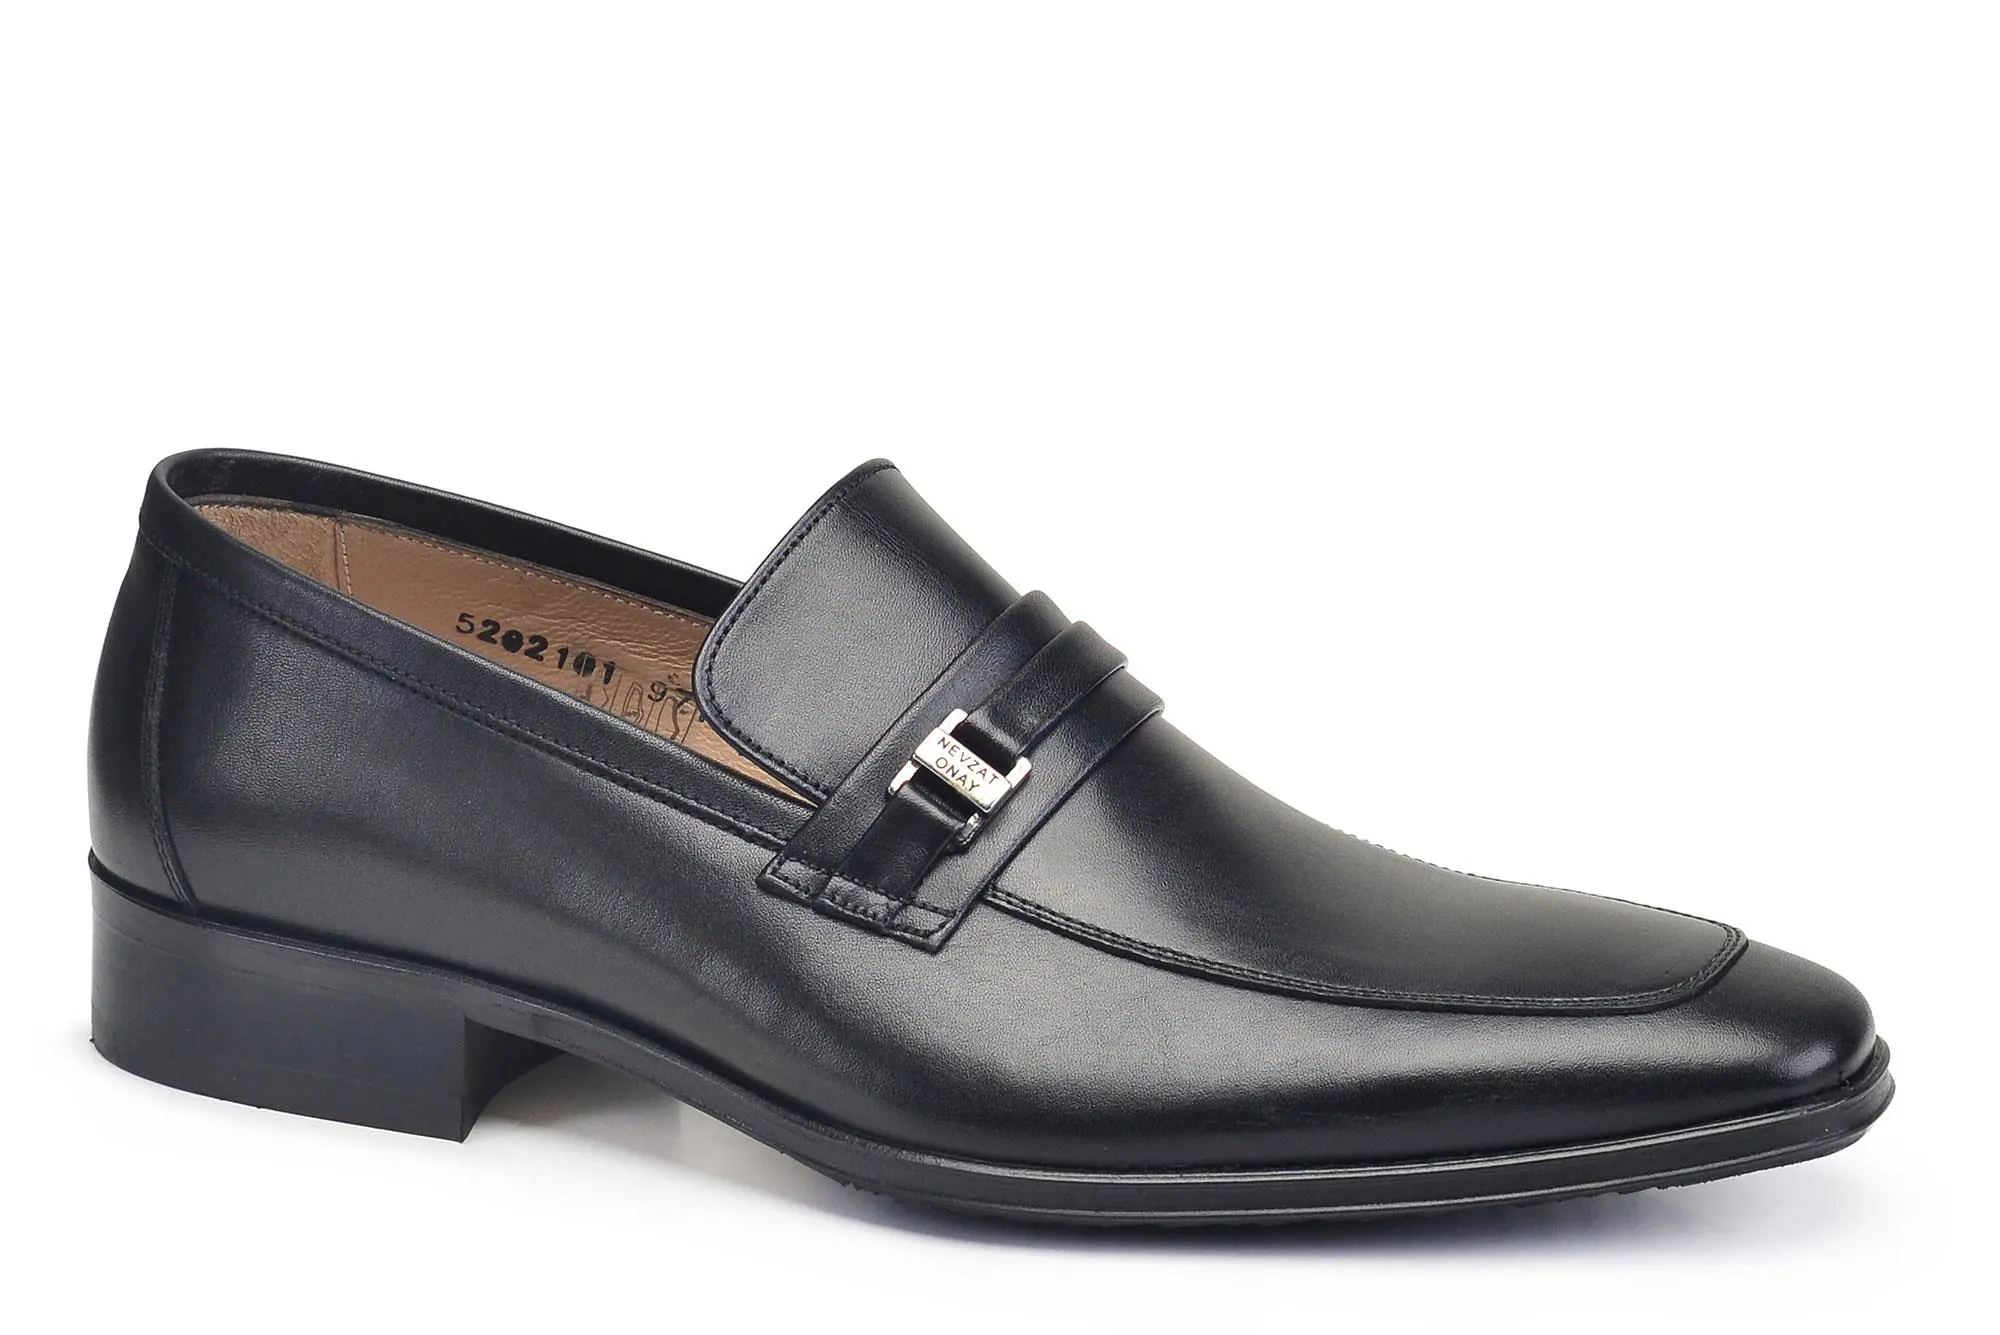 Nevzat Onay Siyah Klasik Bağcıksız Kışlık Erkek Ayakkabı -97181-. 2